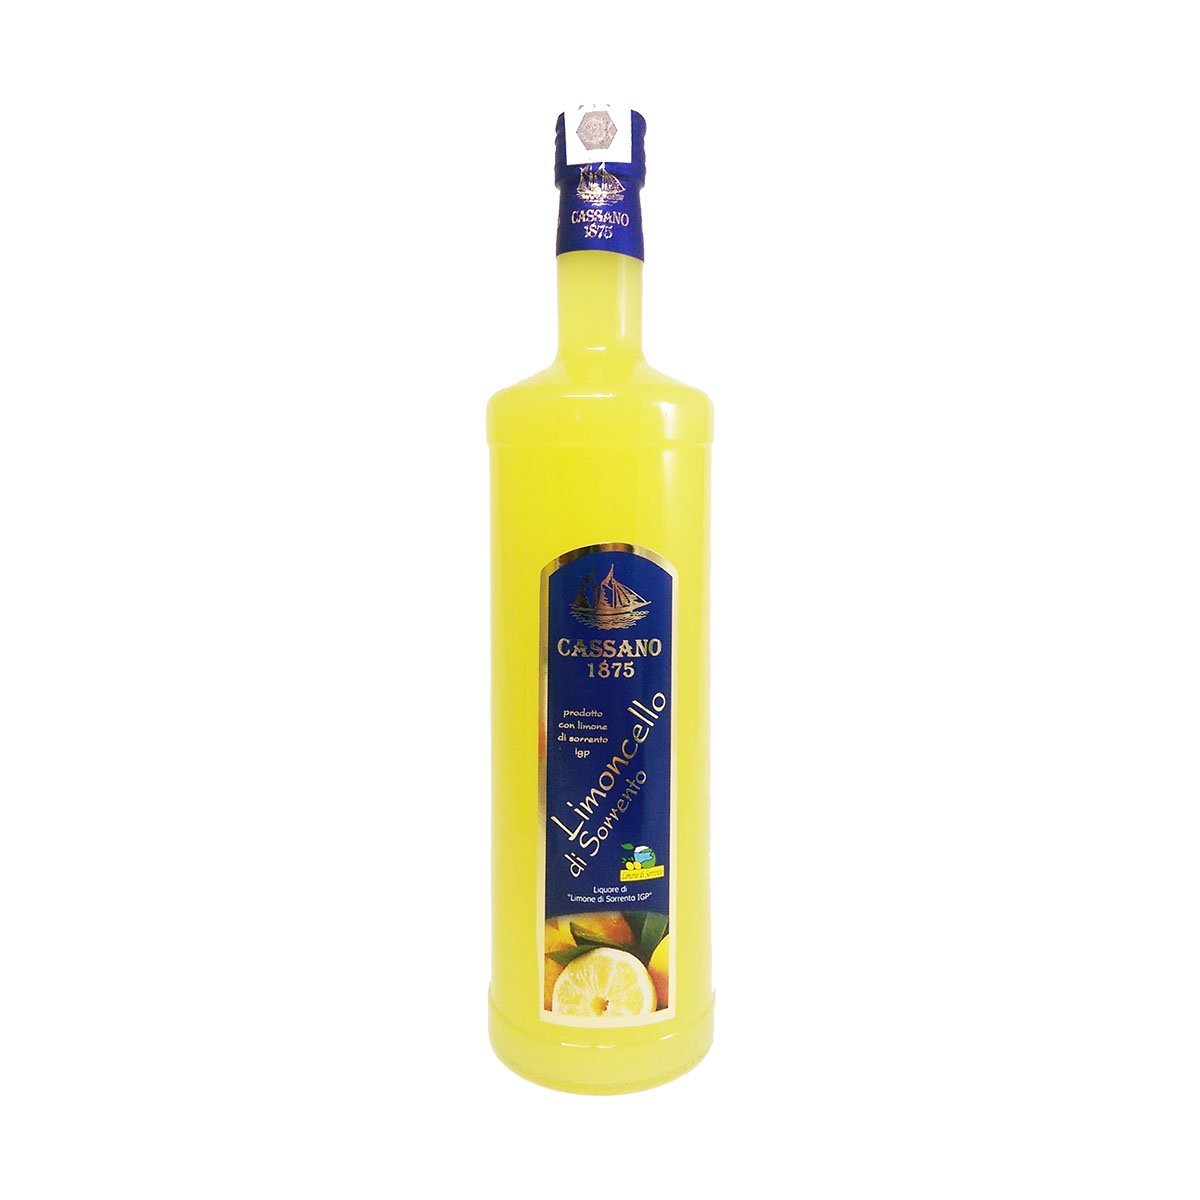 Autumn Party Offer Lemon of Limoncello IGP PepeGusto – 3x Sorrento 1000ml